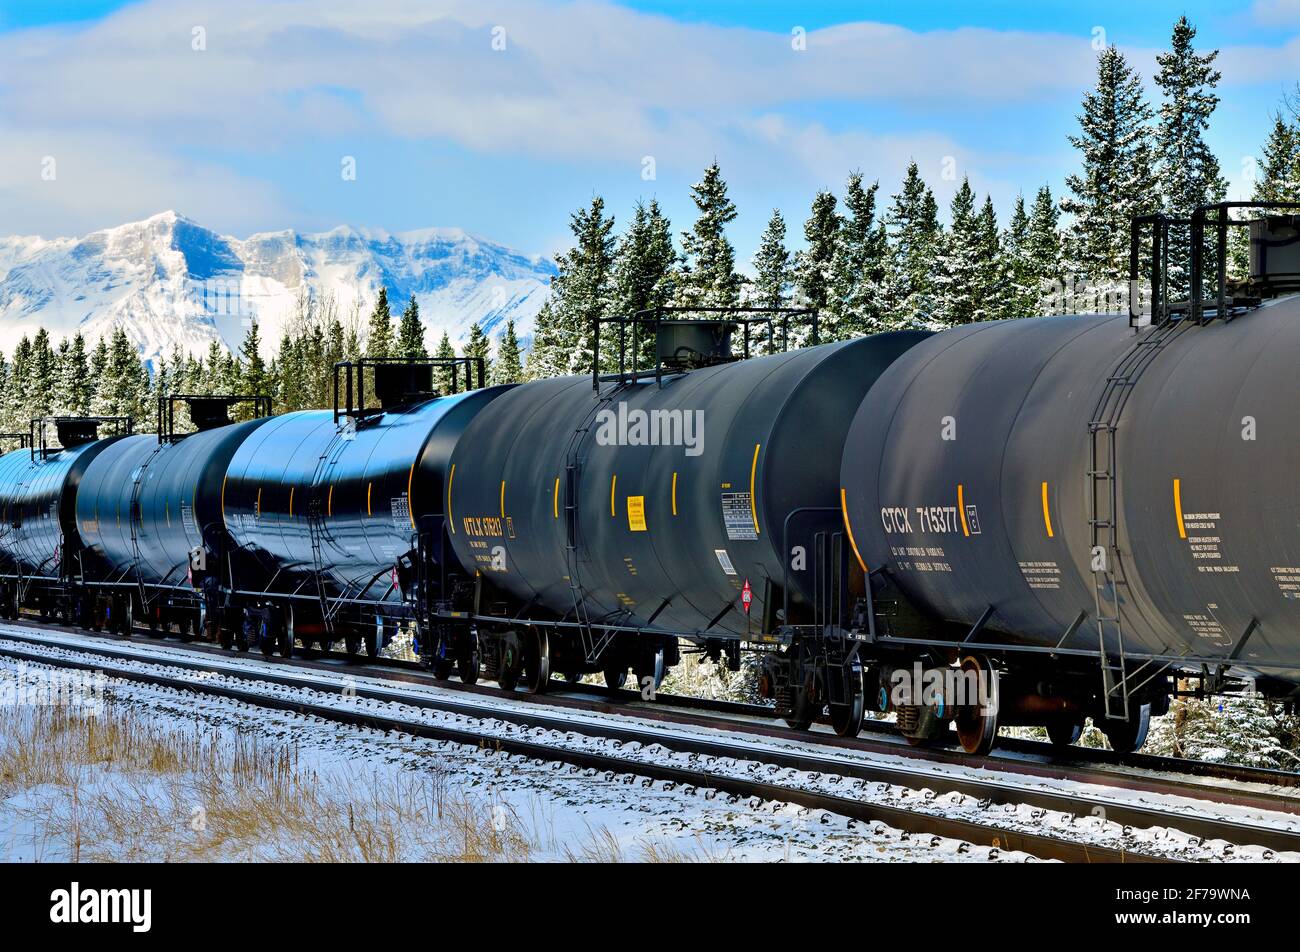 Auf den kommenden Verkehr in einem bewaldeten Gebiet der felsigen Berge von Alberta Canada wartet ein kanadischer Güterzug, der mit Tankwagen beladen ist. Stockfoto